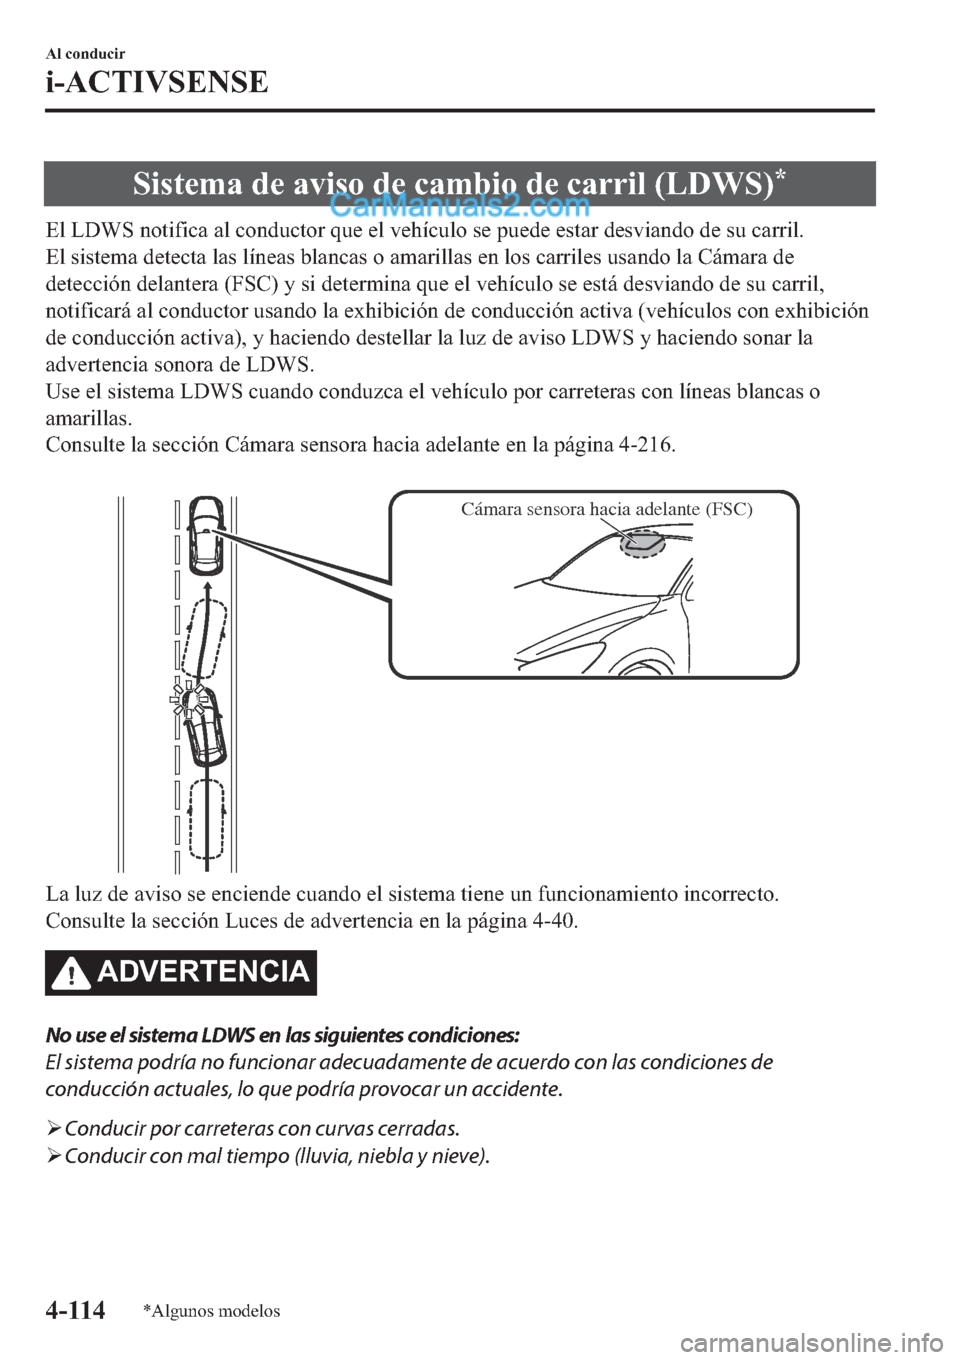 MAZDA MODEL 2 2019  Manual del propietario (in Spanish) �6�L�V�W�H�P�D��G�H��D�Y�L�V�R��G�H��F�D�P�E�L�R��G�H��F�D�U�U�L�O���/��:�6��
�(�O��/��:�6��Q�R�W�L�I�L�F�D��D�O��F�R�Q�G�X�F�W�R�U��T�X�H��H�O��Y�H�K�t�F�X�O�R��V�H��S�X�H�G�H��